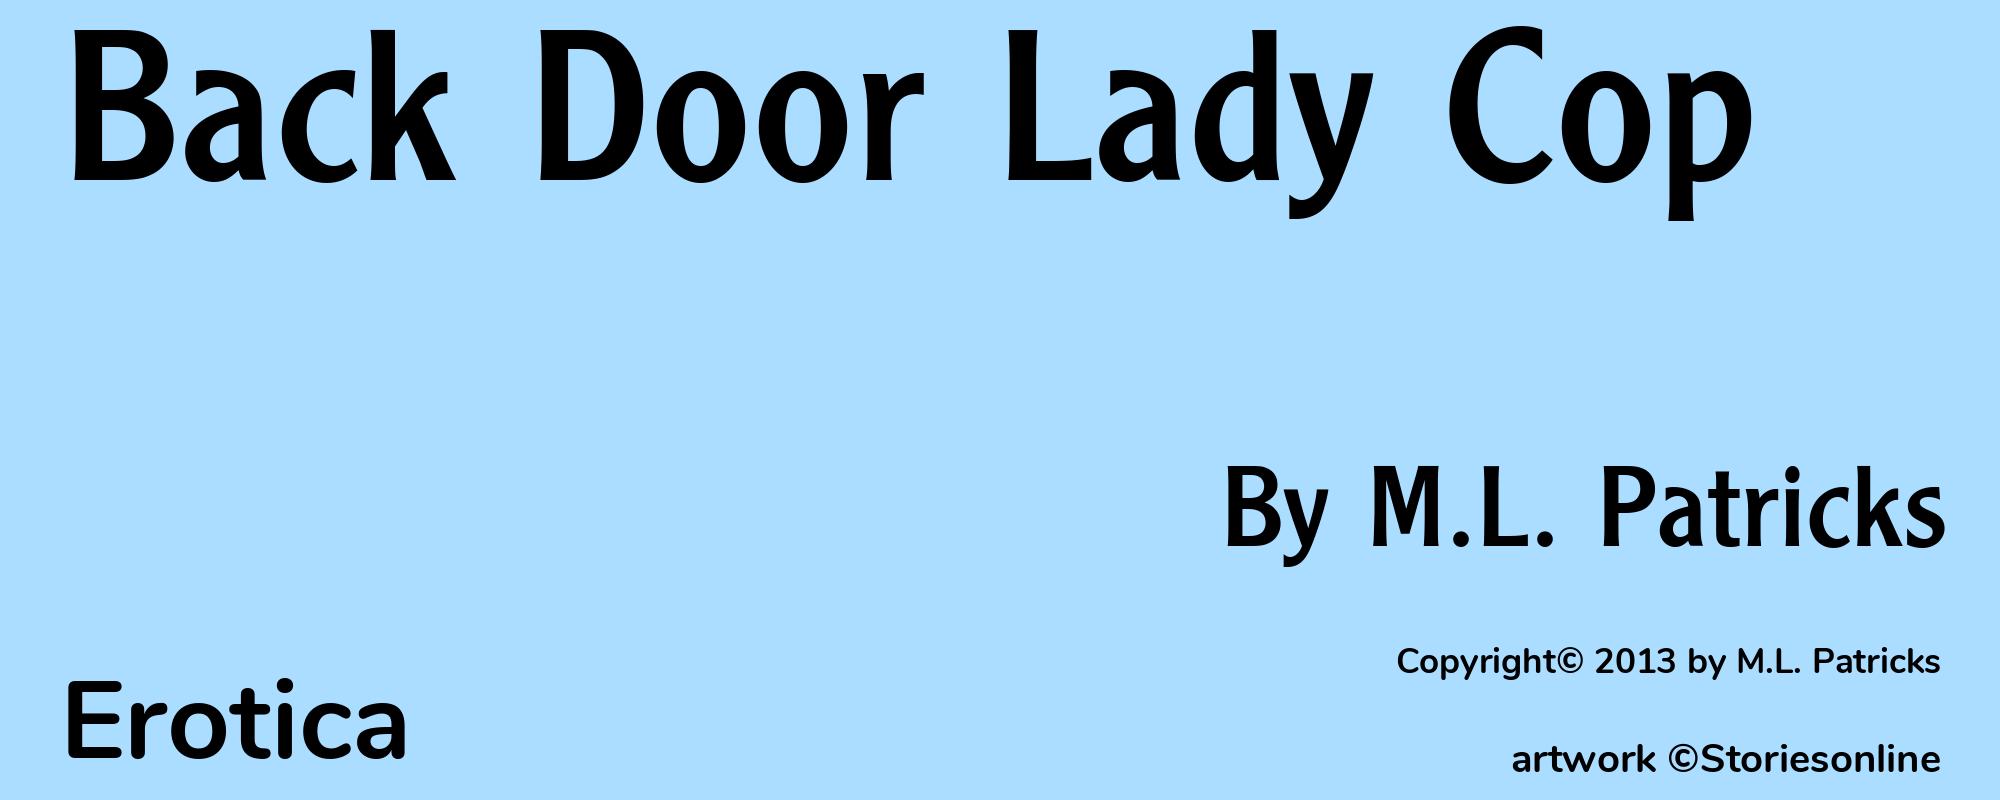 Back Door Lady Cop - Cover